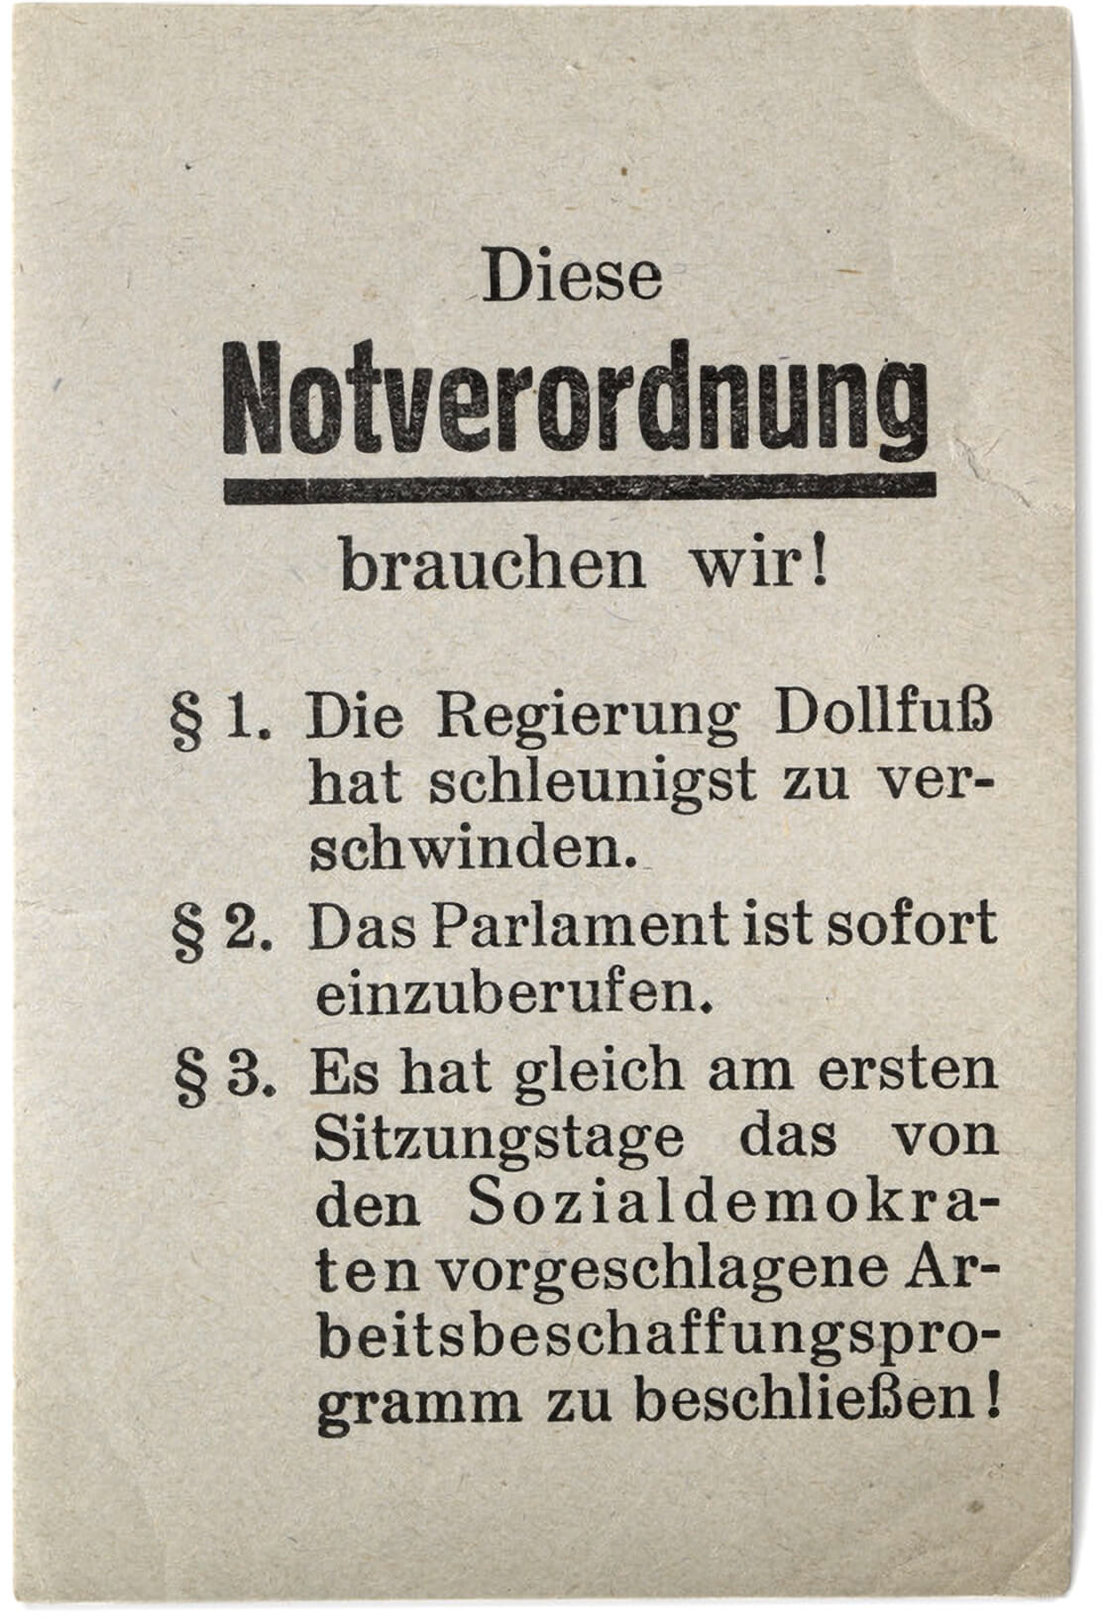 Streuzettel gegen die Regierung Dollfuß, 1933/34, Wien Museum 